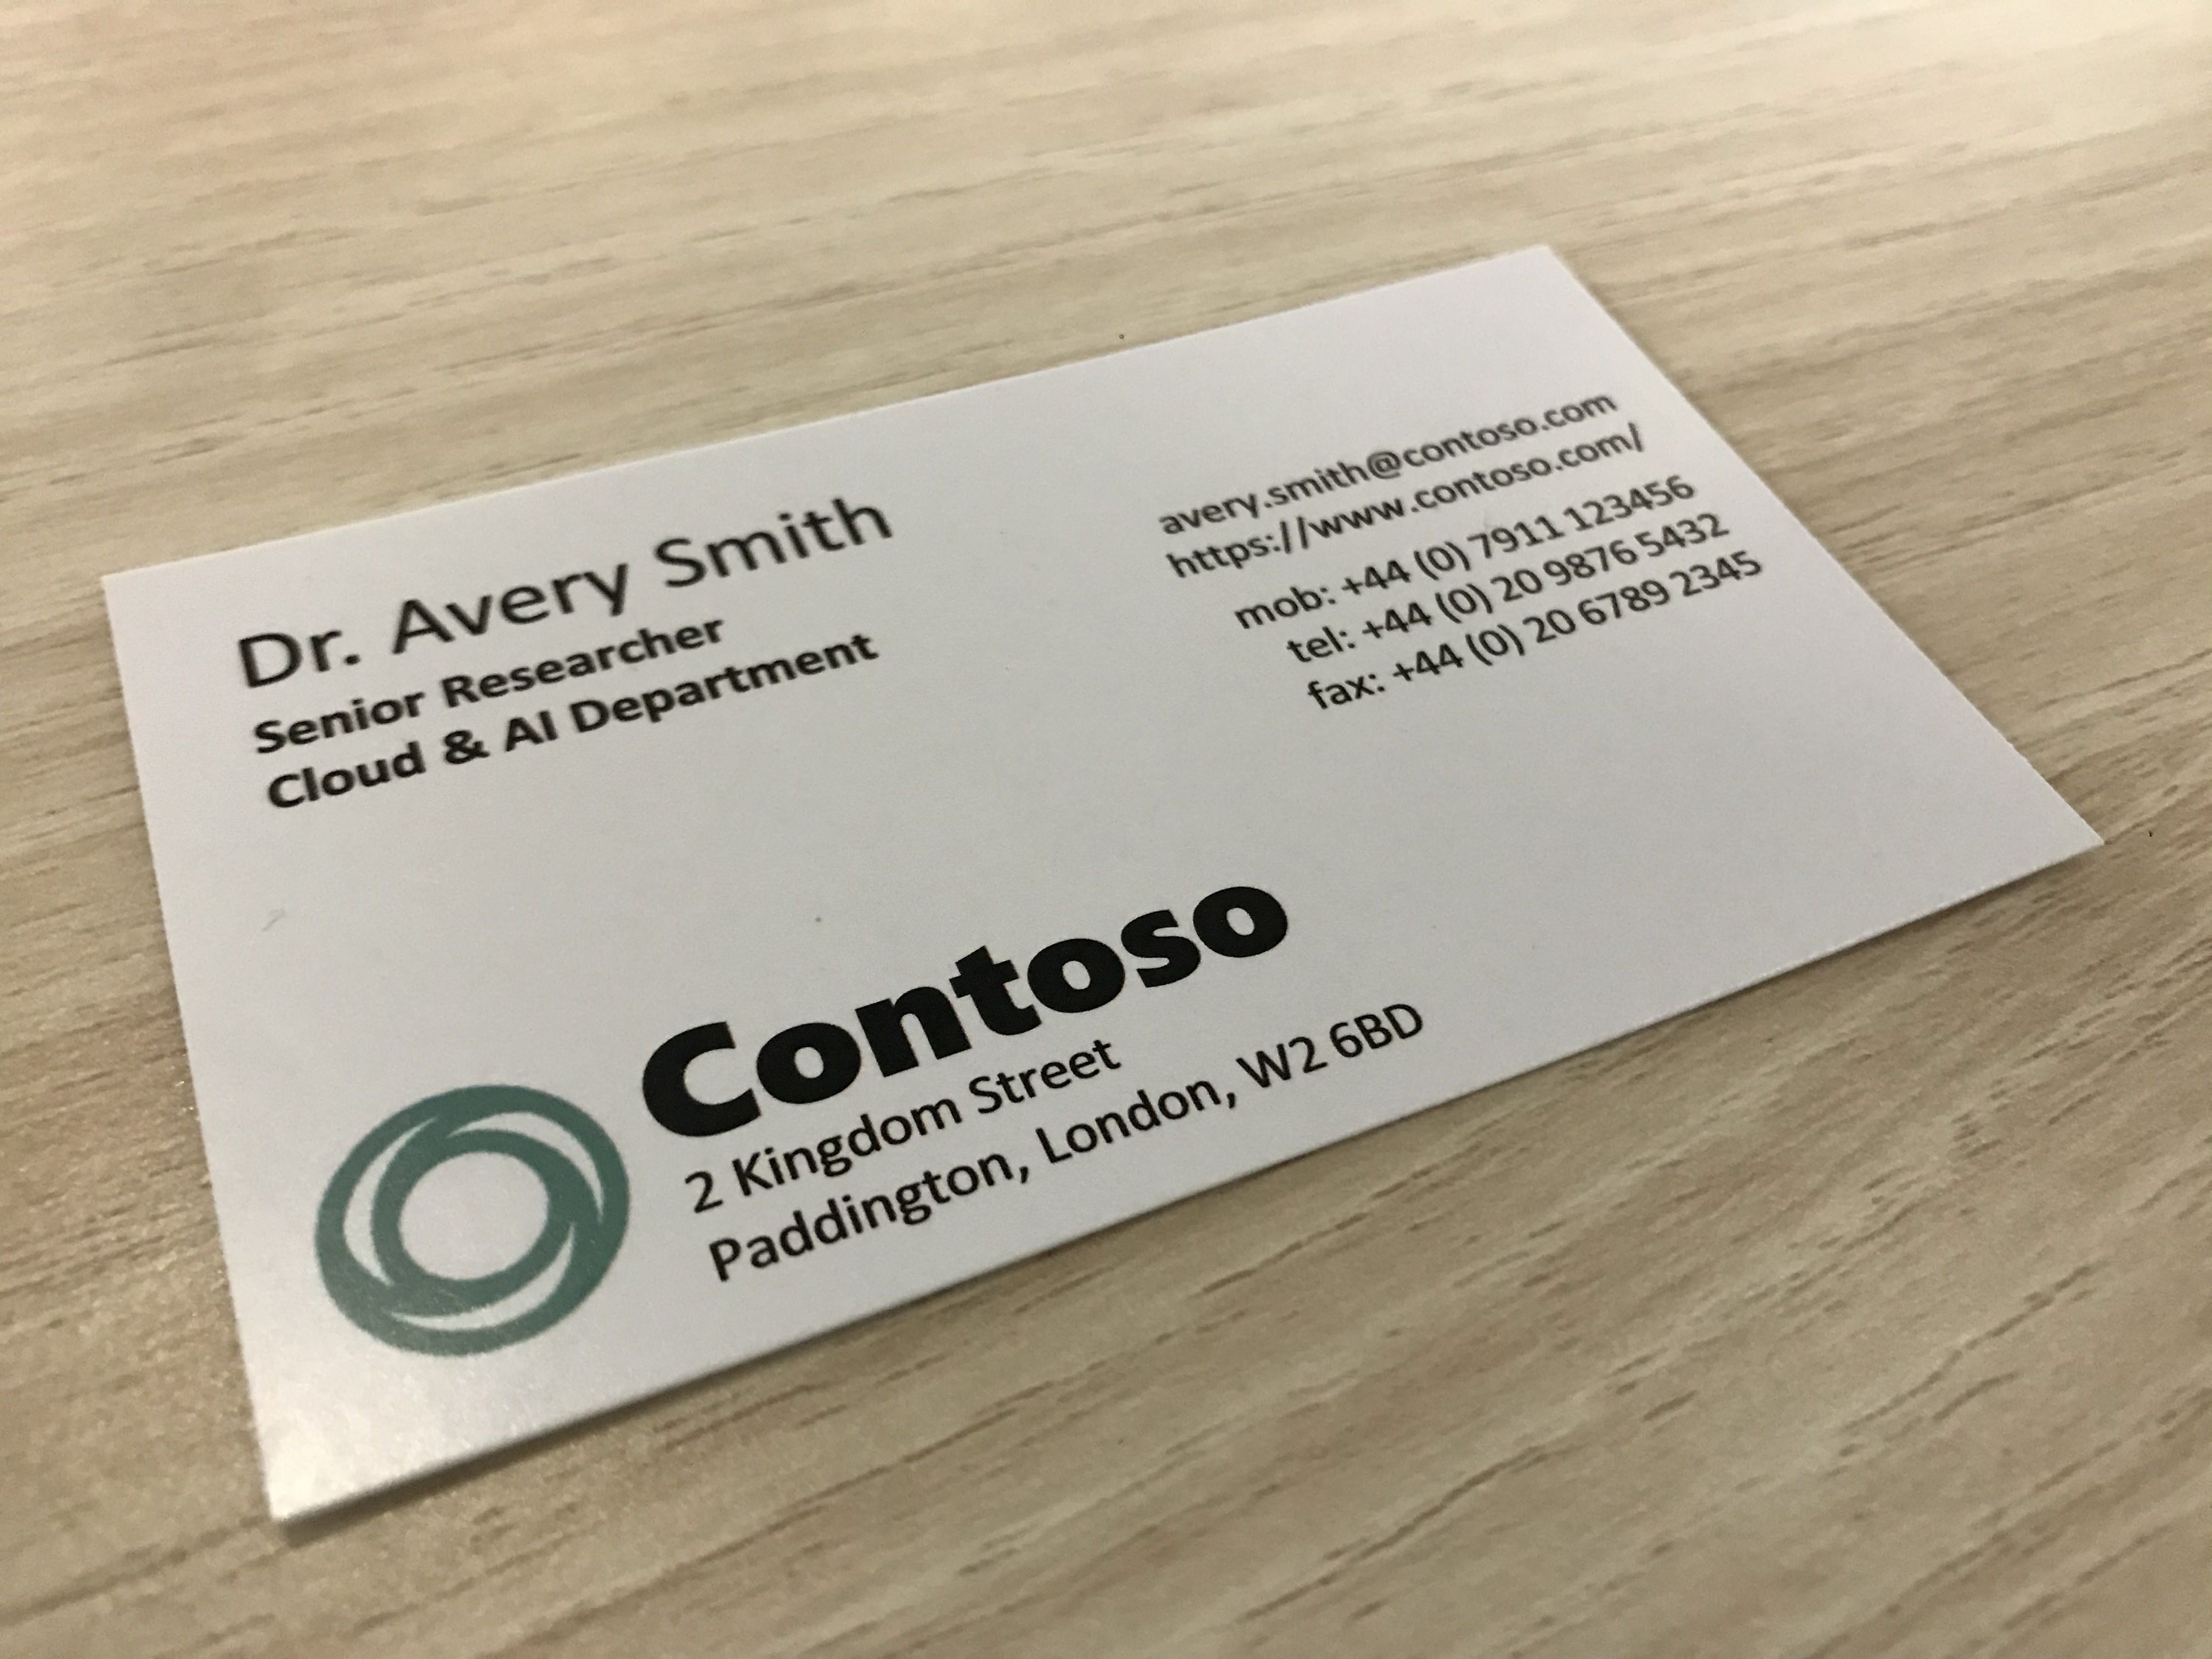 Contoso라는 회사의 명함을 보여 주는 사진